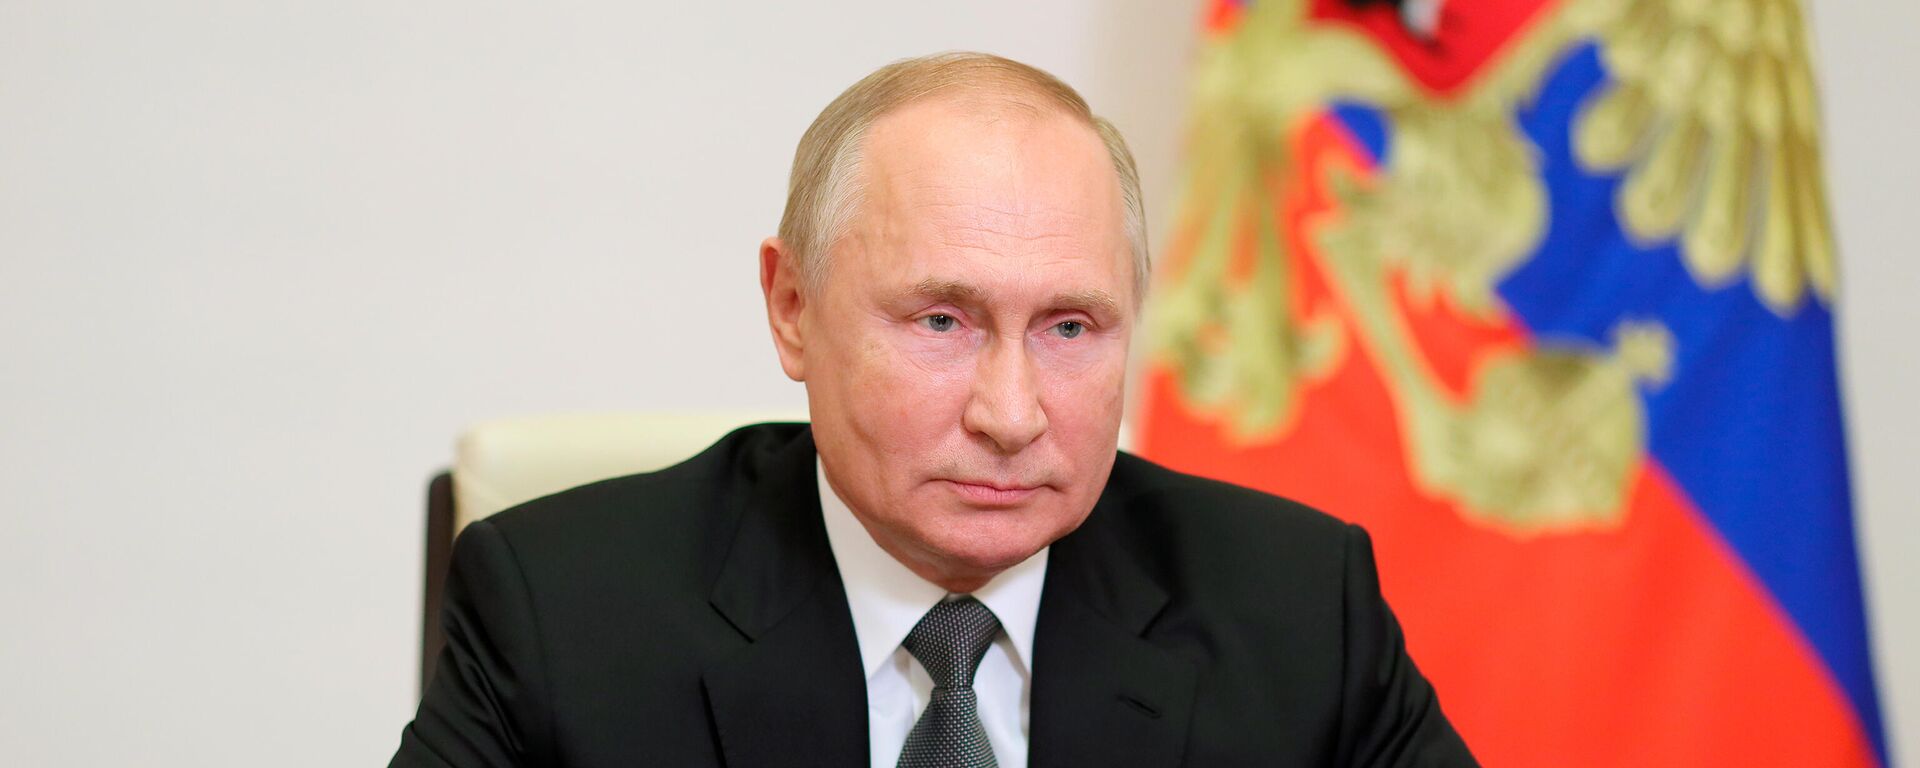 Vladimir Putin, presidente de Rusia - Sputnik Mundo, 1920, 02.11.2021